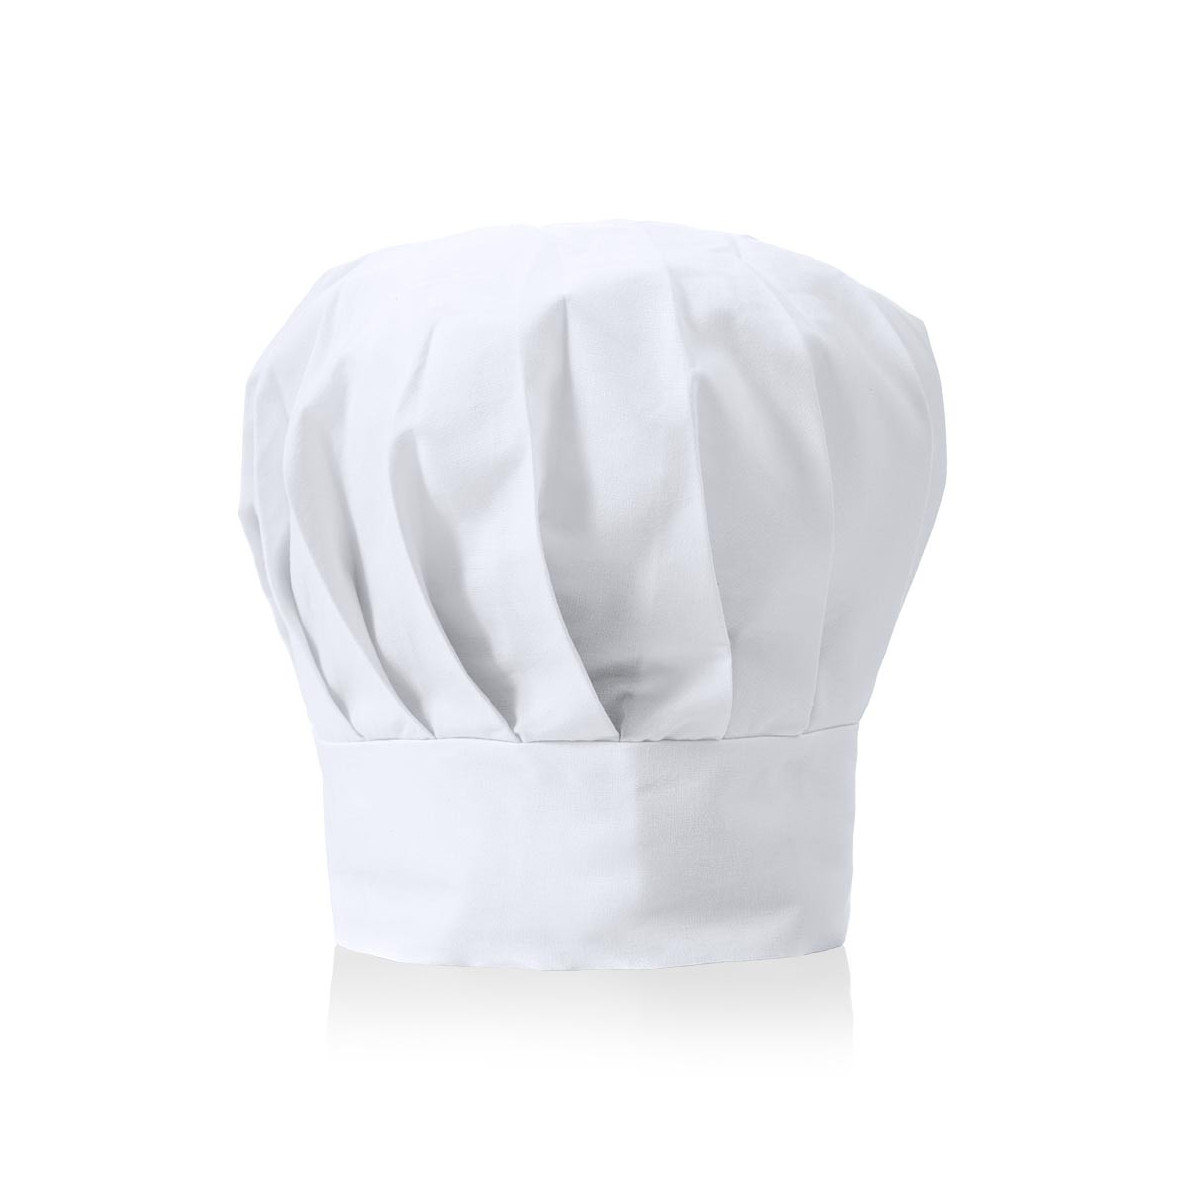 Nilson kitchen hat